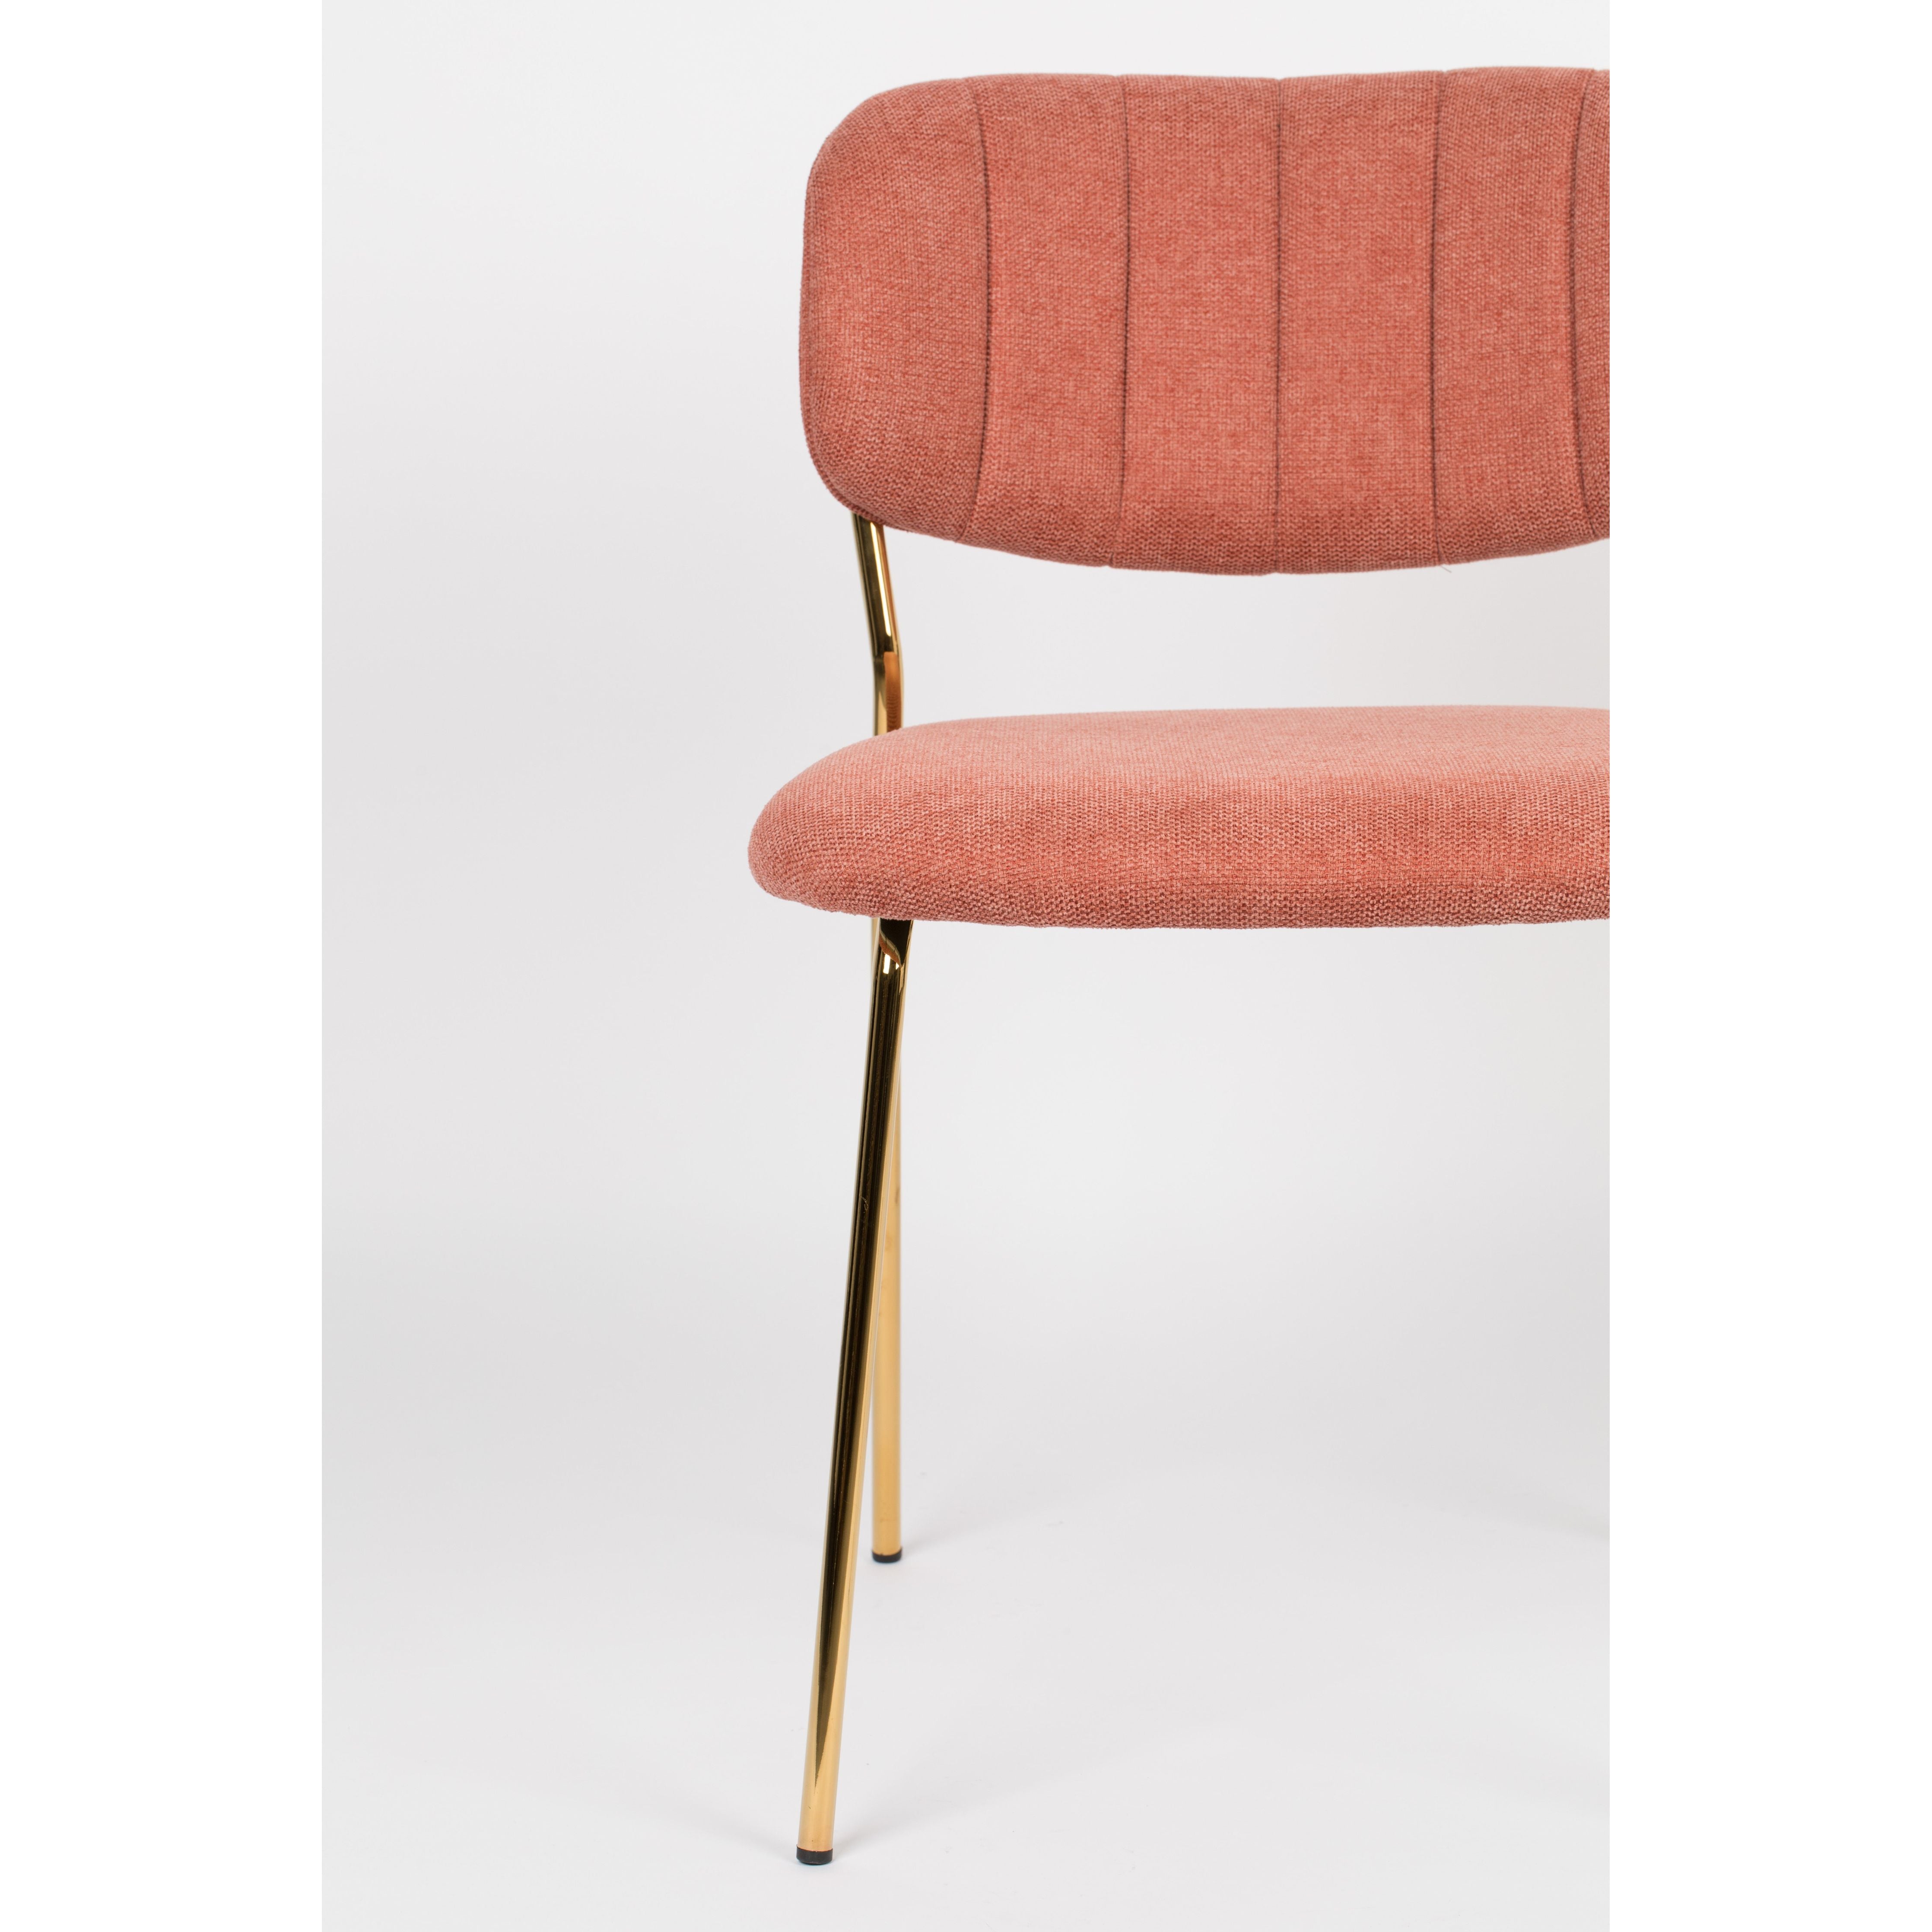 Chair jolien gold/pink